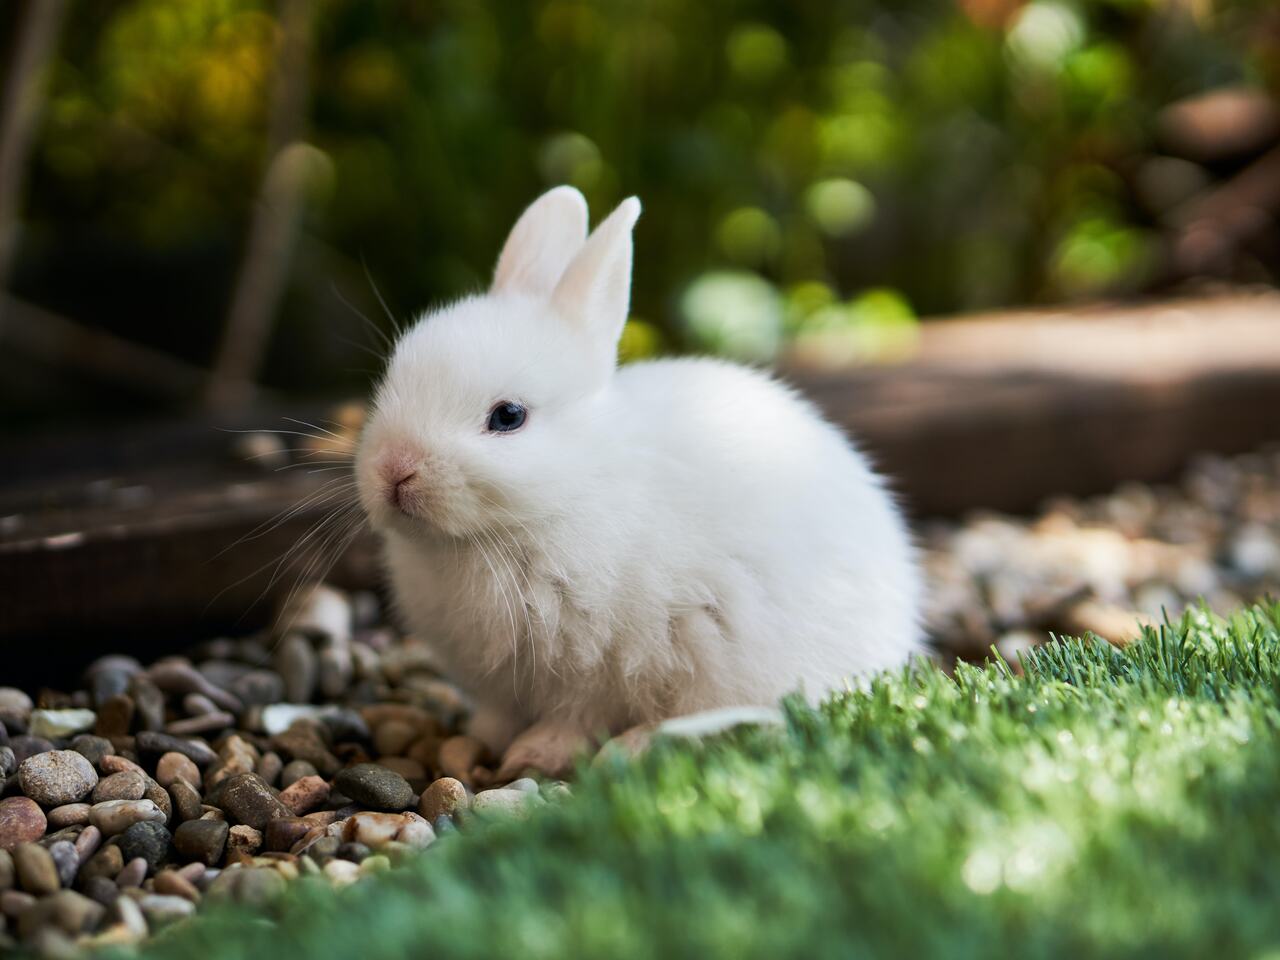  خرگوش کے بارے میں خواب دیکھنا - تمام معنی